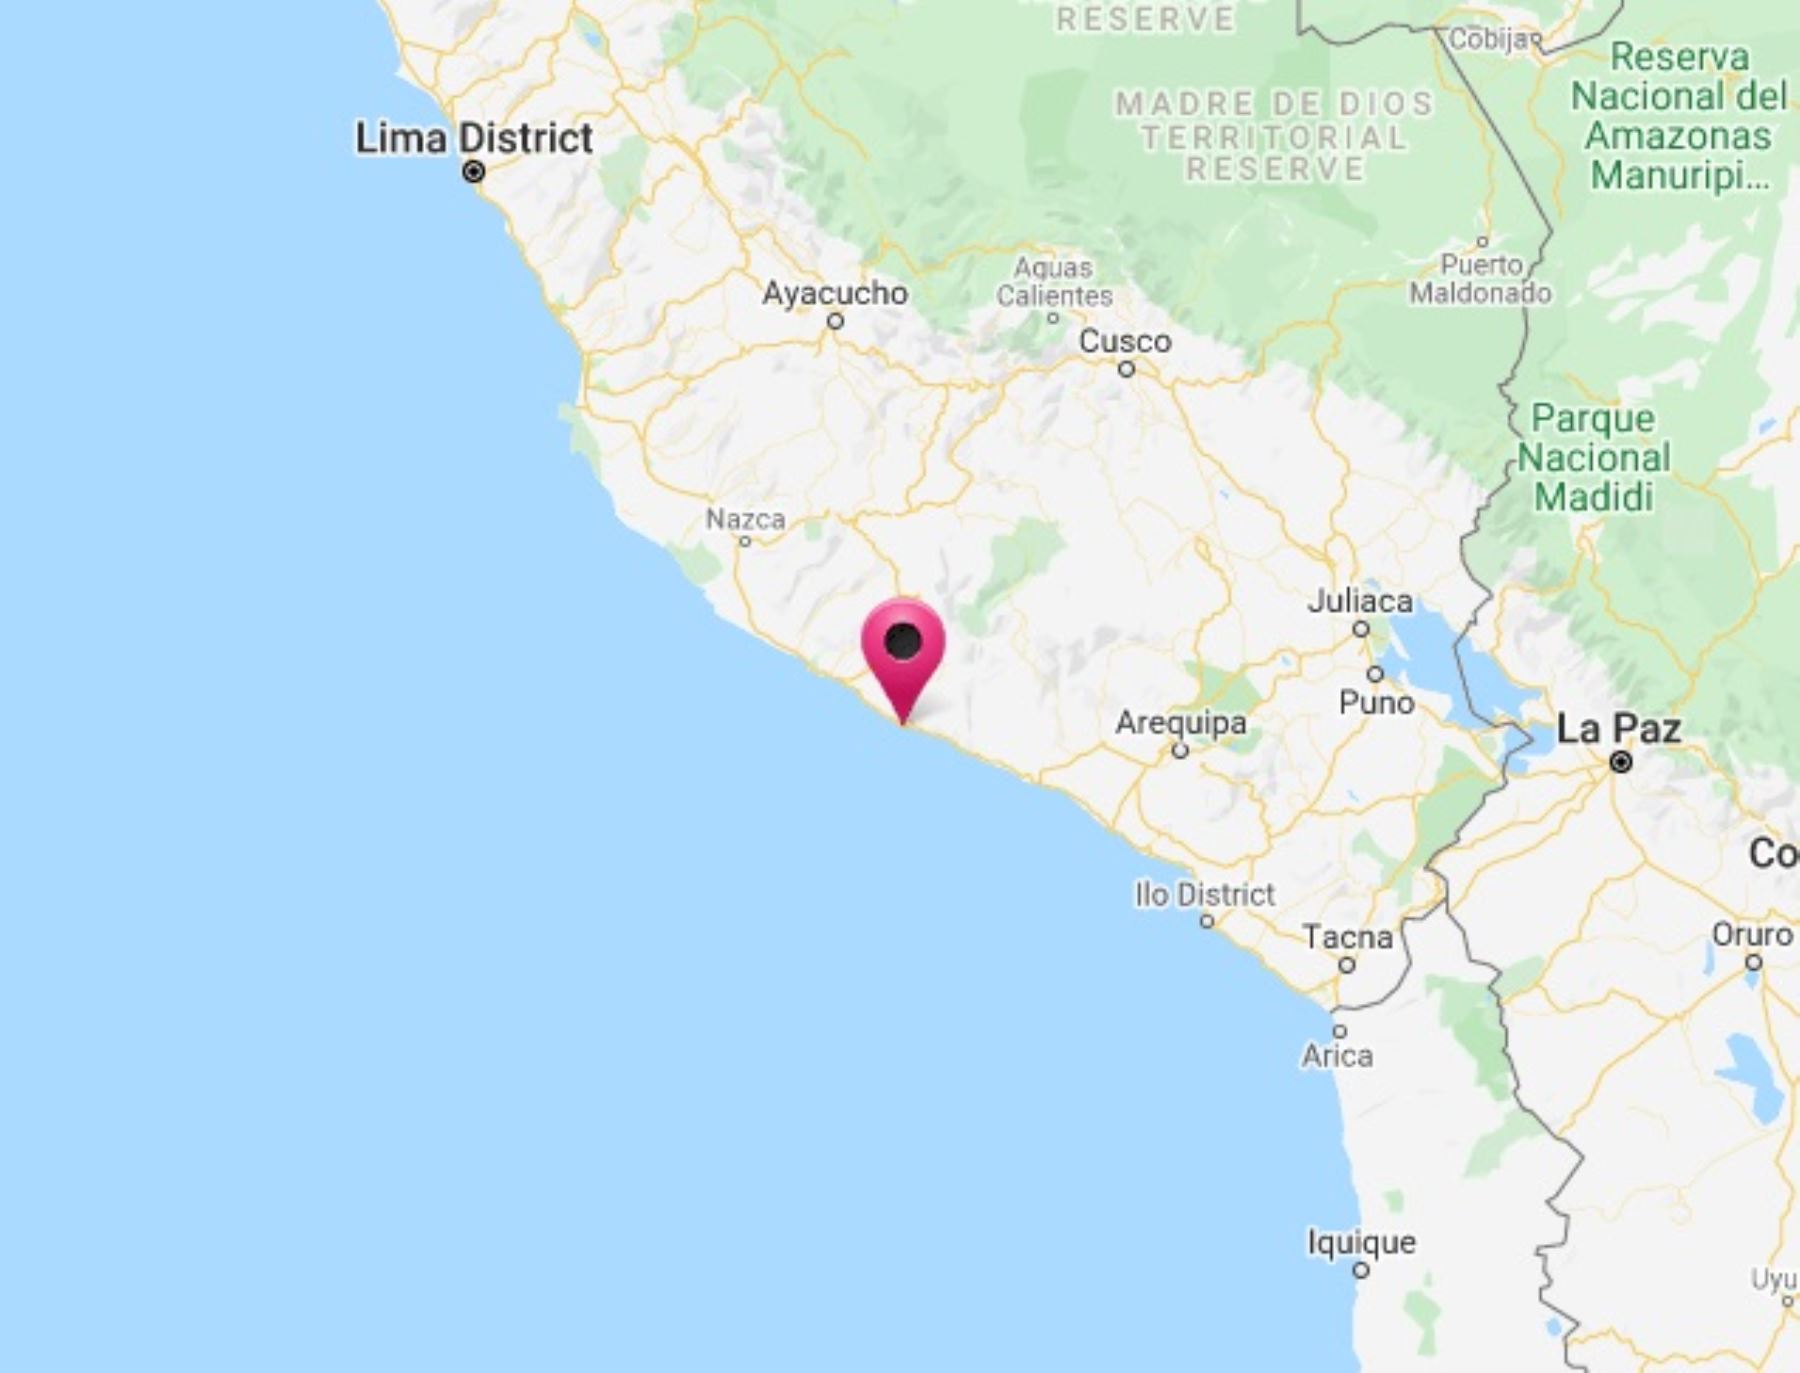 Un sismo de magnitud 4.6 se registró esta tarde en Arequipa. El epicentro de este temblor se ubicó cerca de Atico.